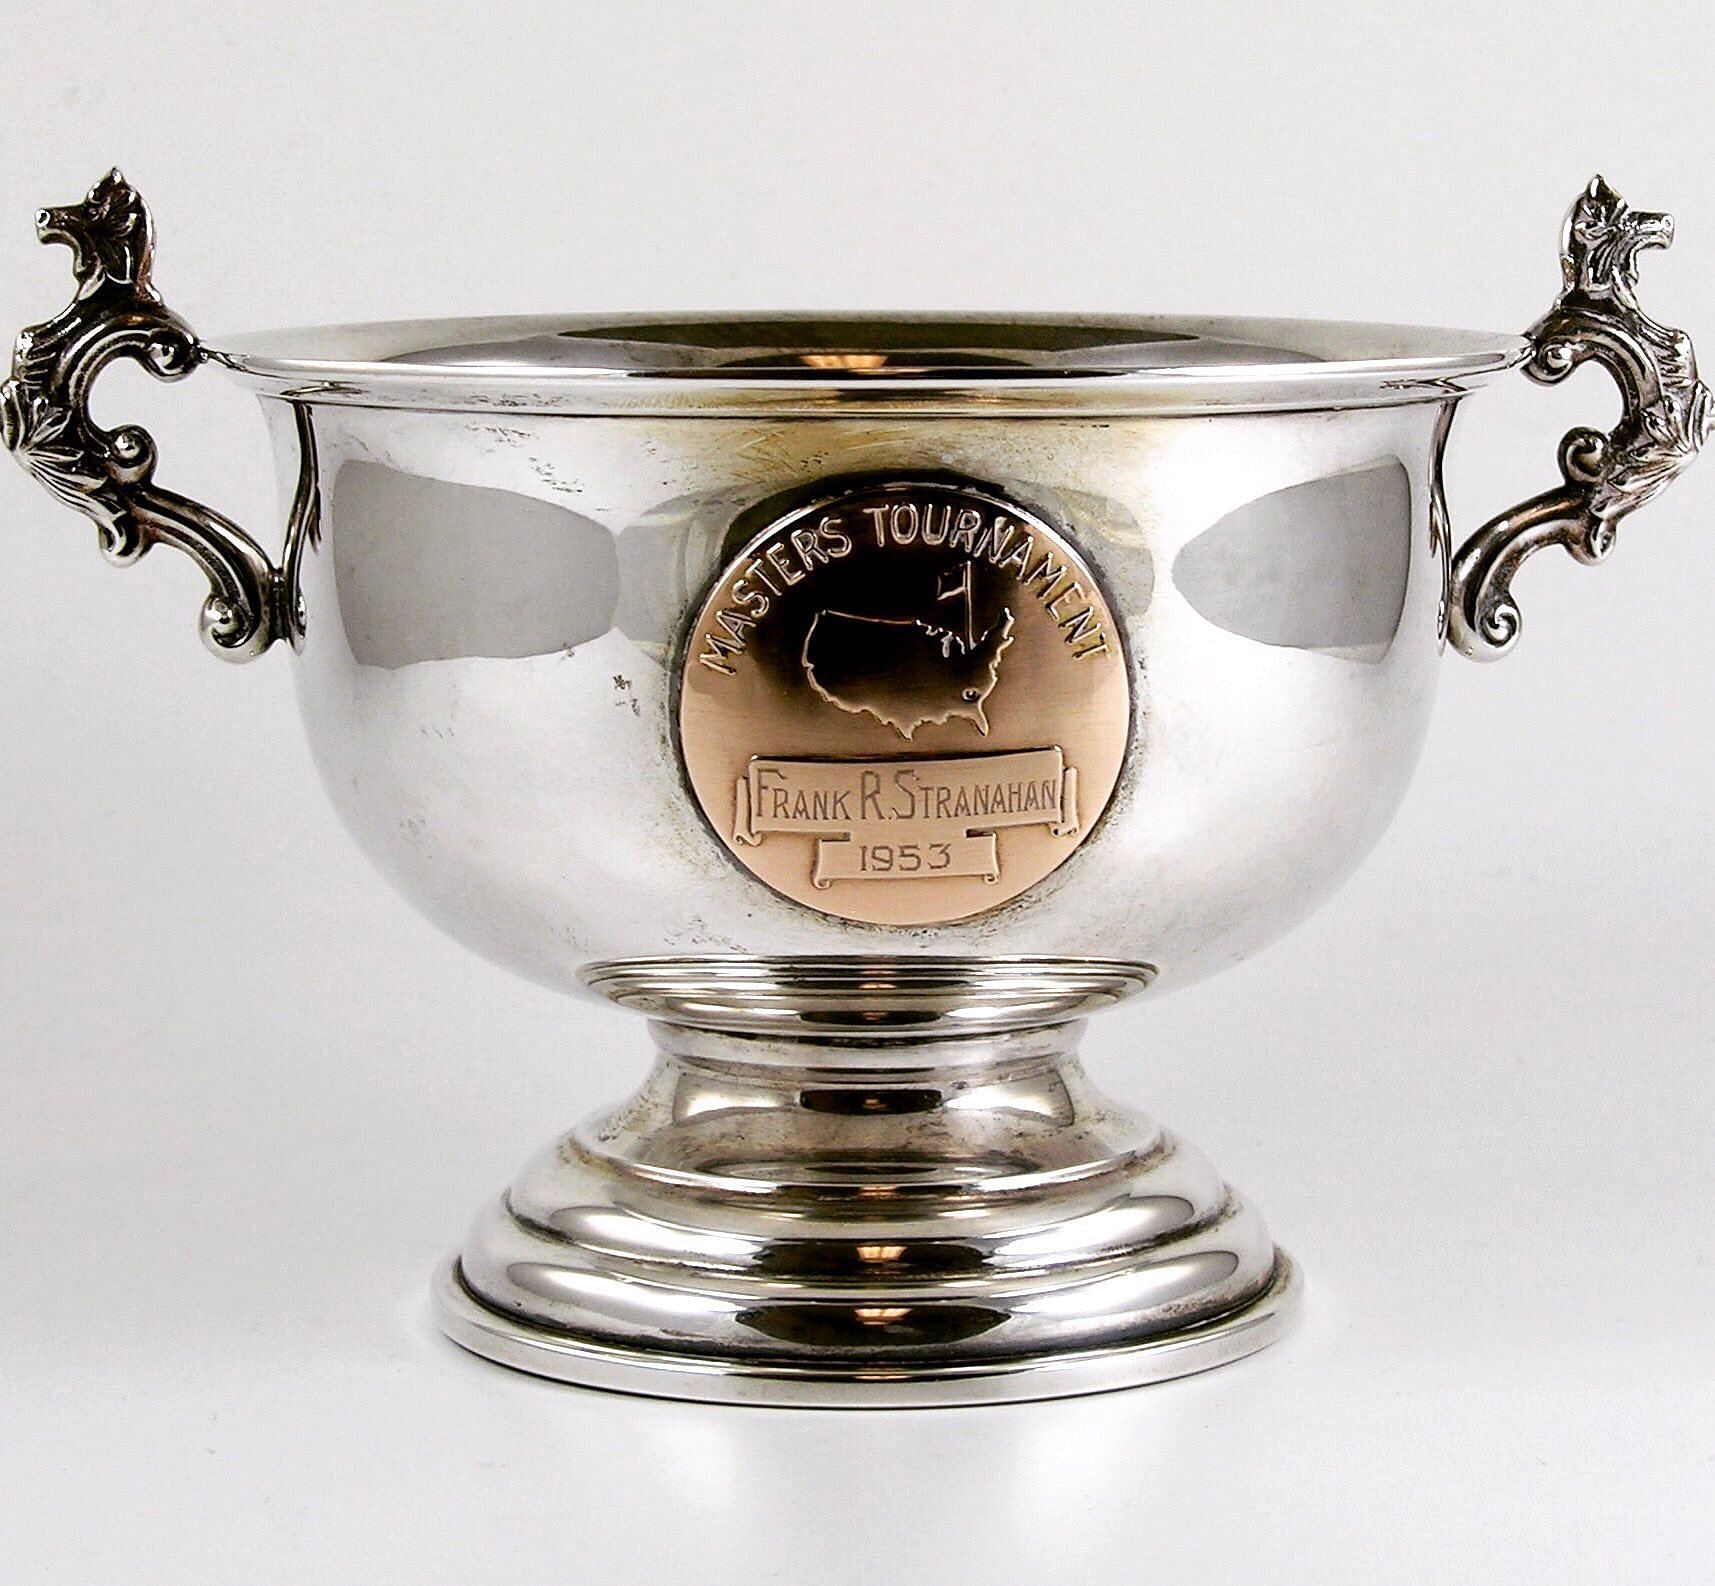 Low Amateur trophy (Image via Fore Putt Golf)